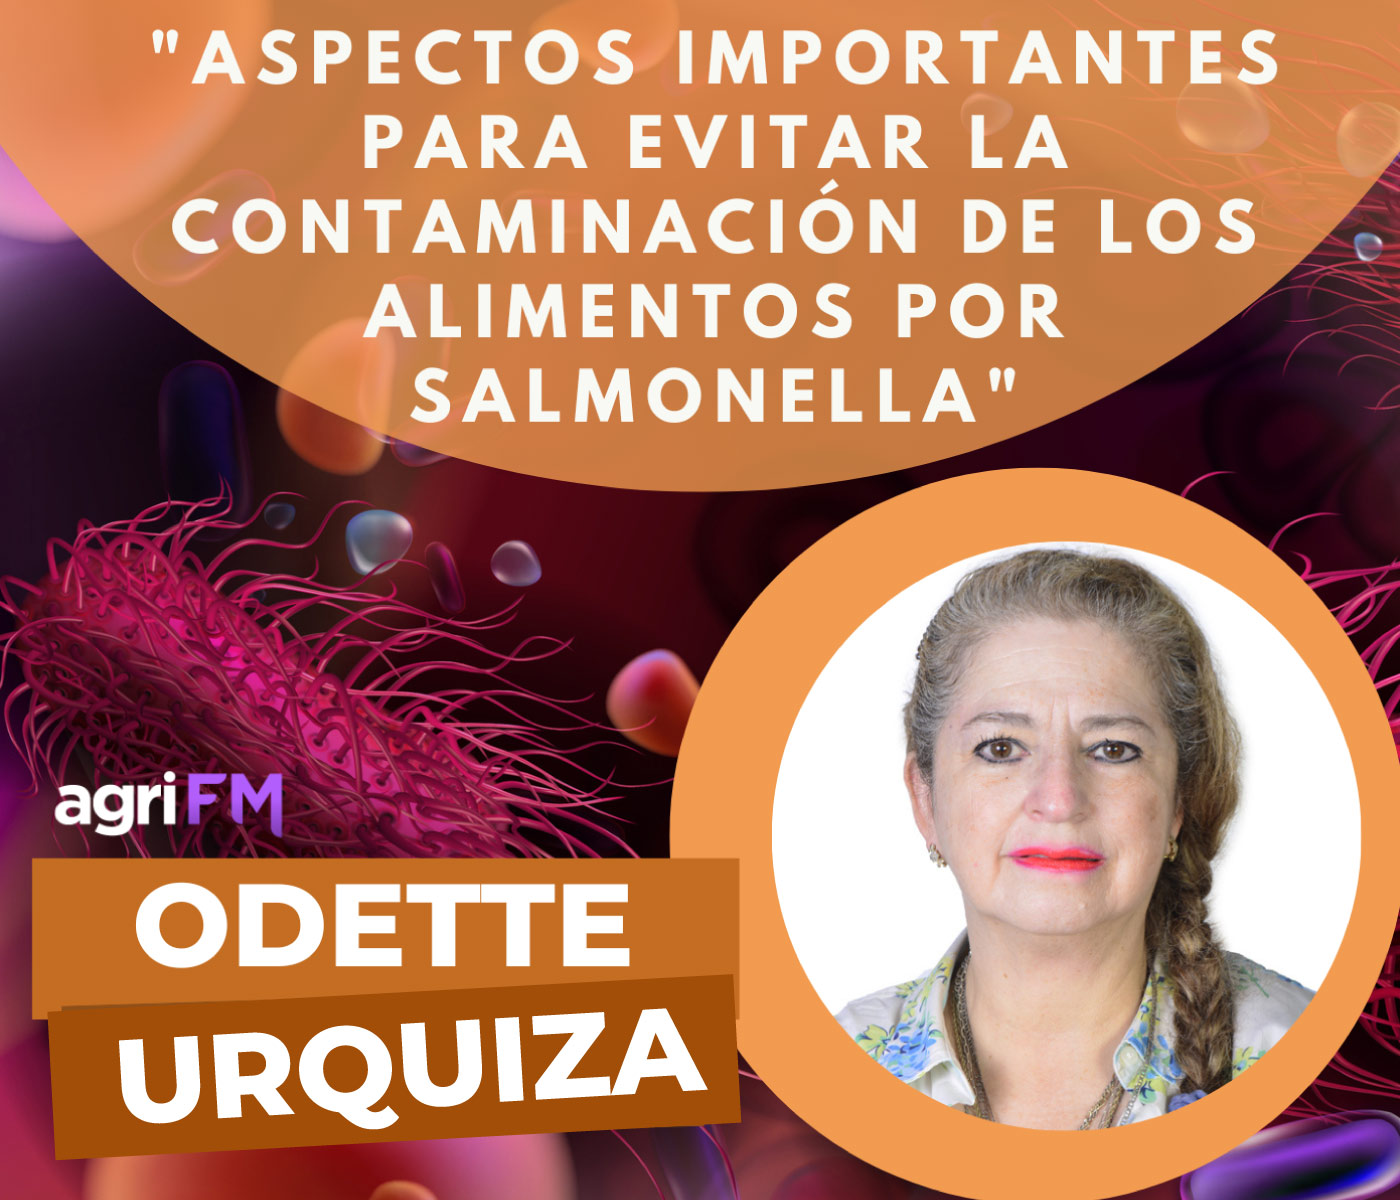 Dra. Odette Urquiza: ¿Cómo evitar la contaminación de los alimentos...